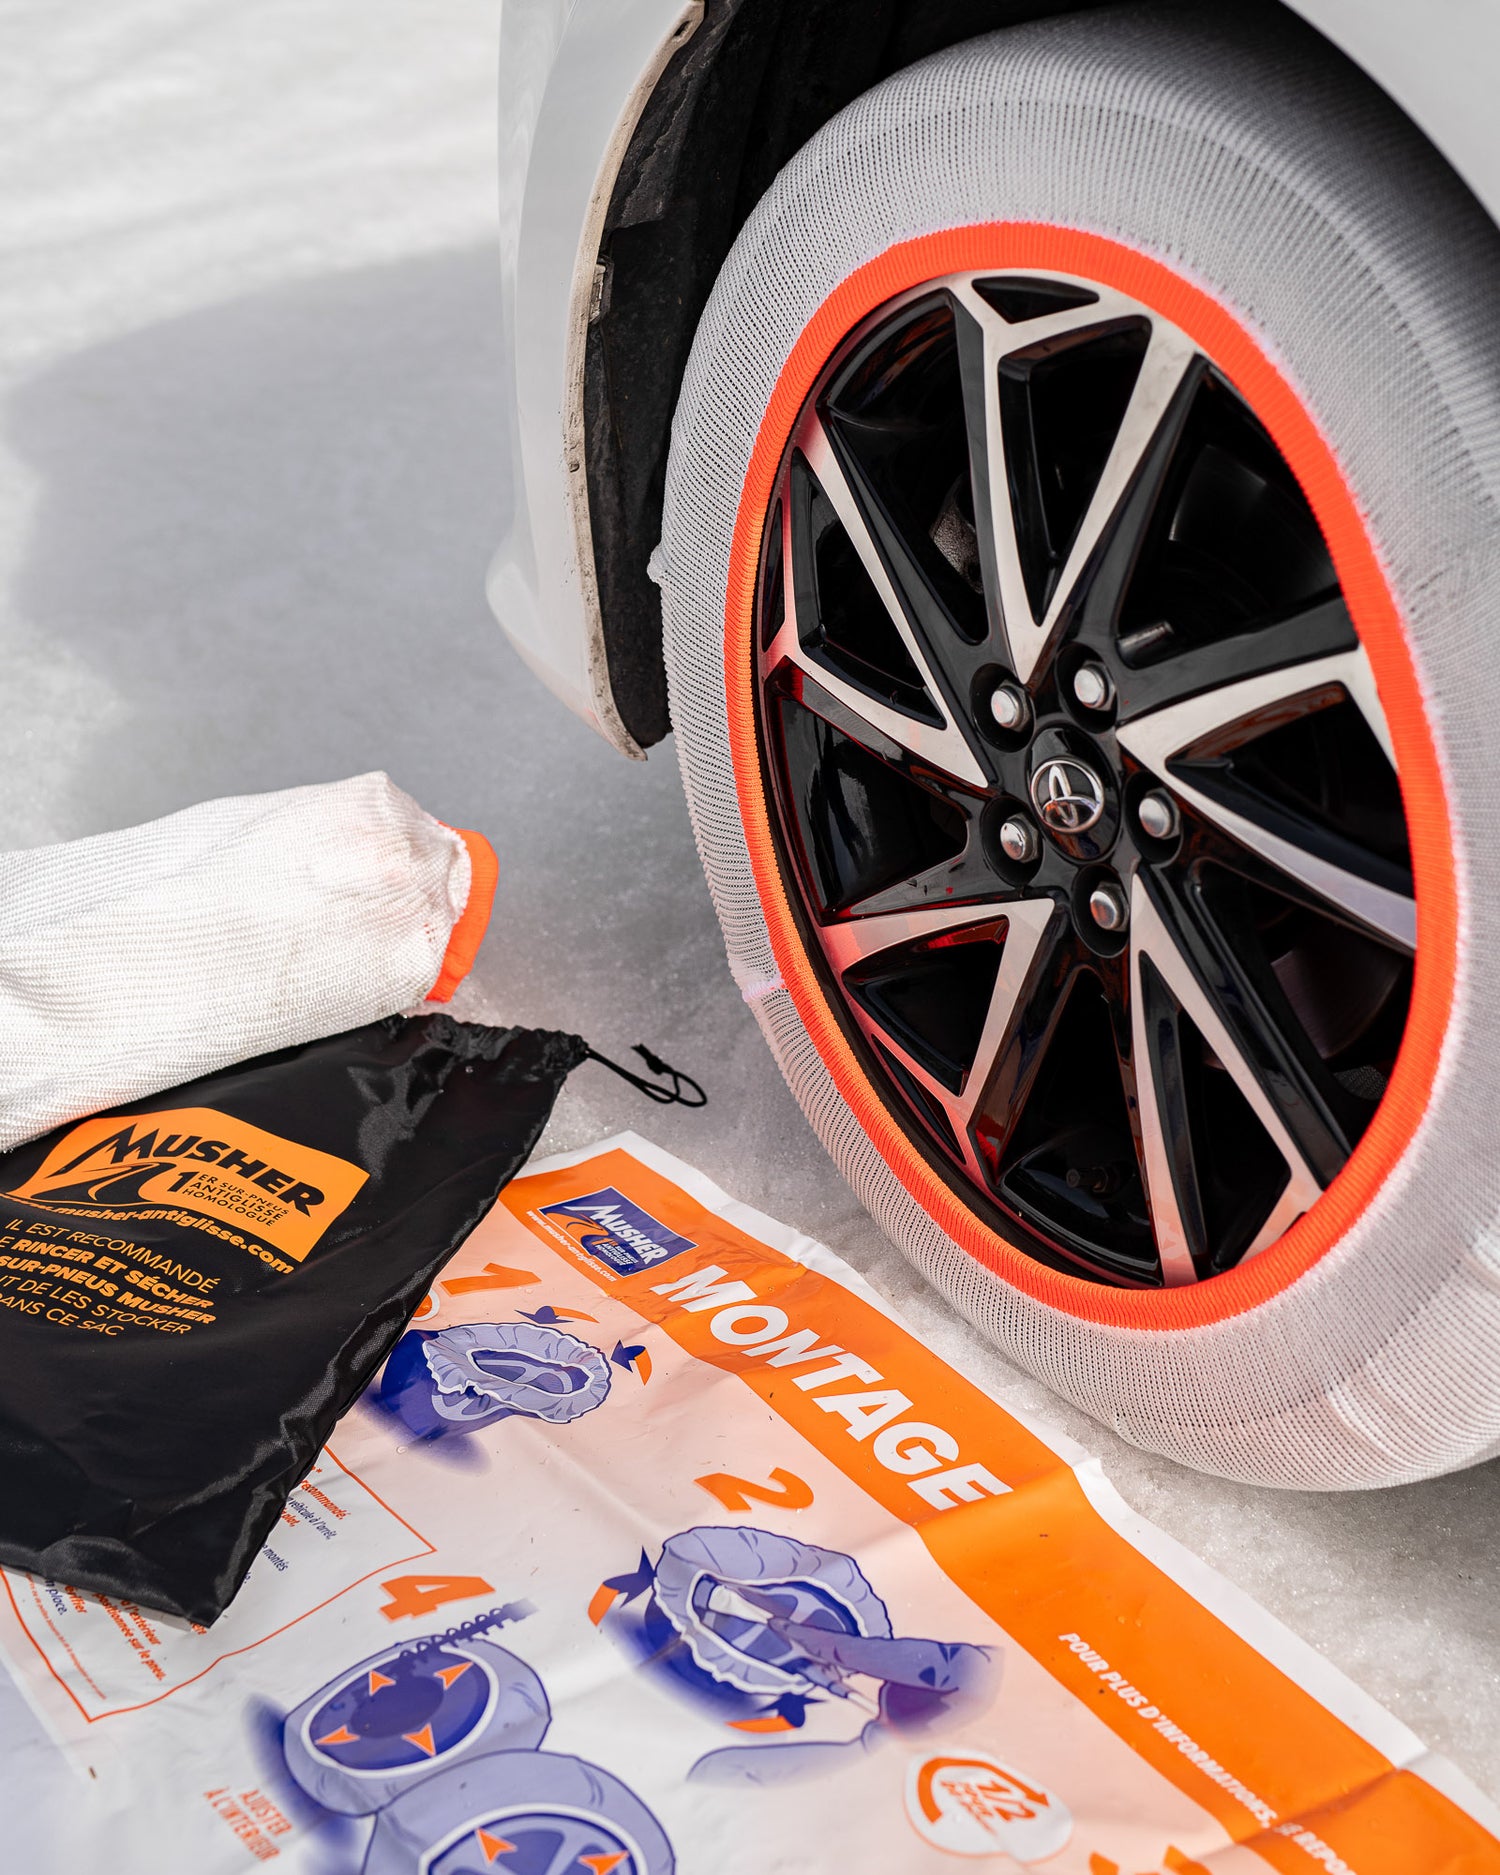 Labo Auto Plus : que valent les chaussettes neige antiglisse de Musher